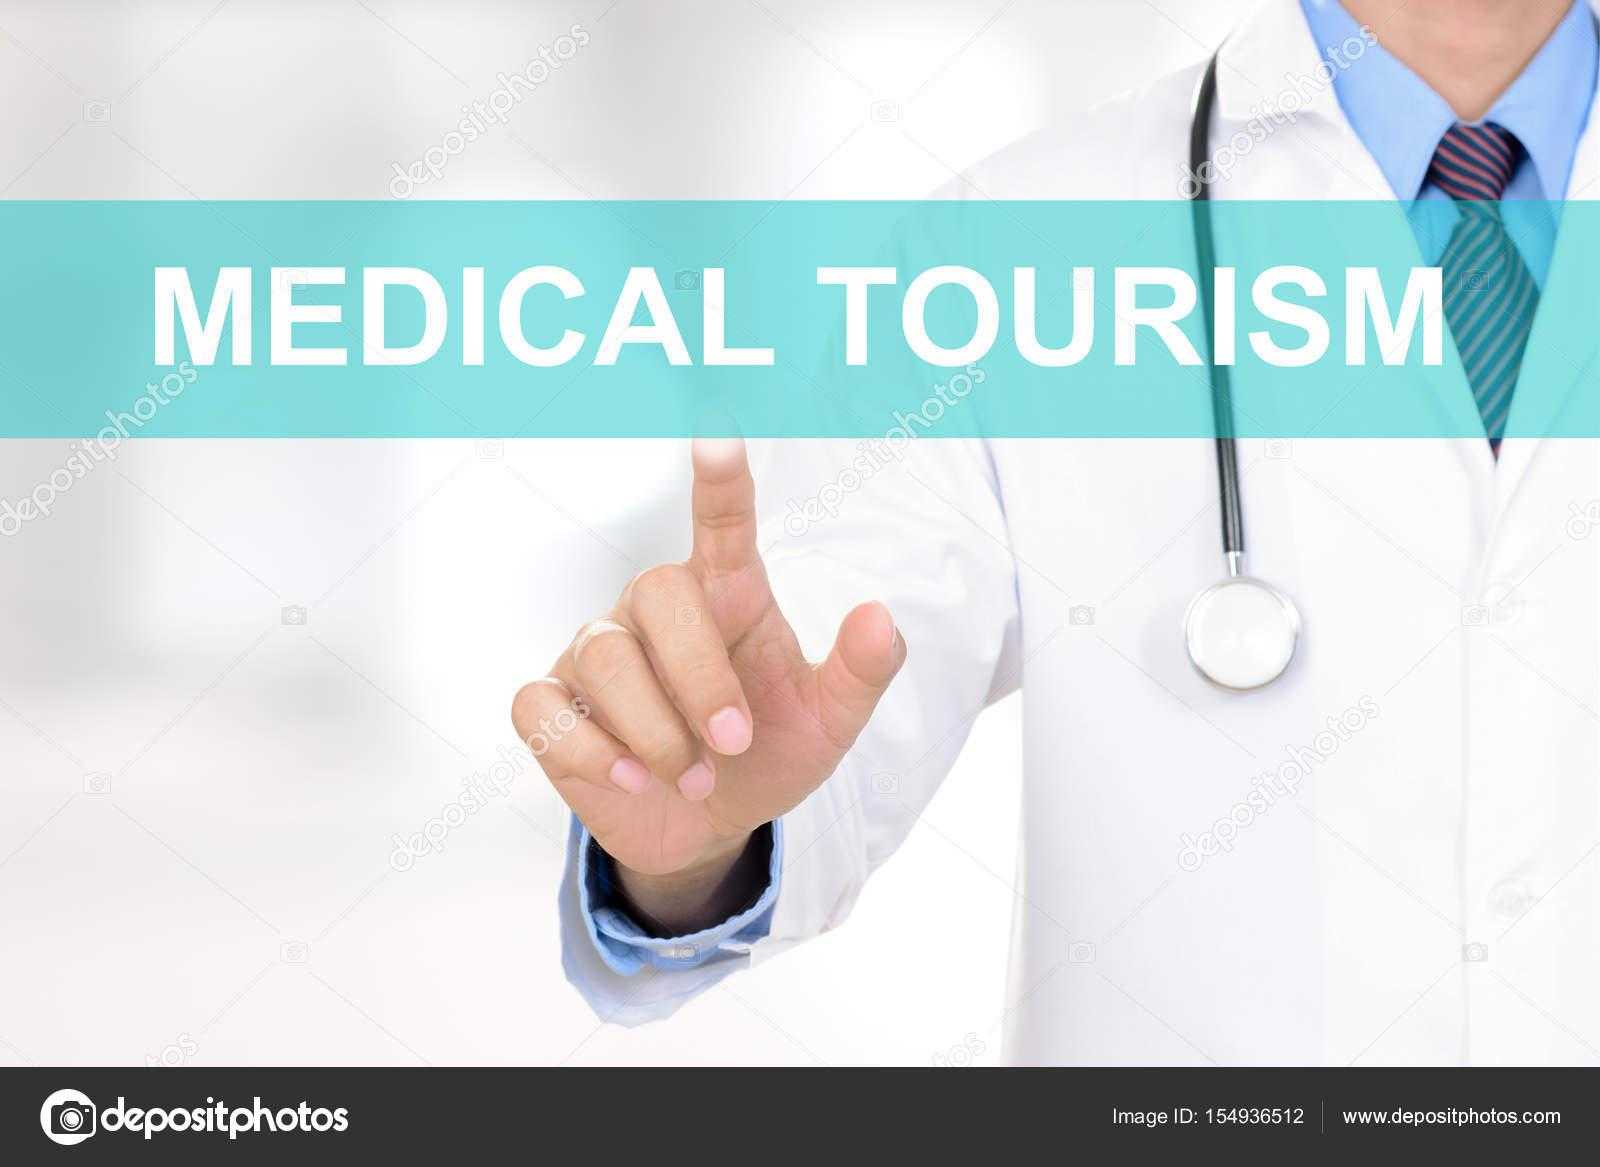 7 самых популярных стран для медицинского туризма